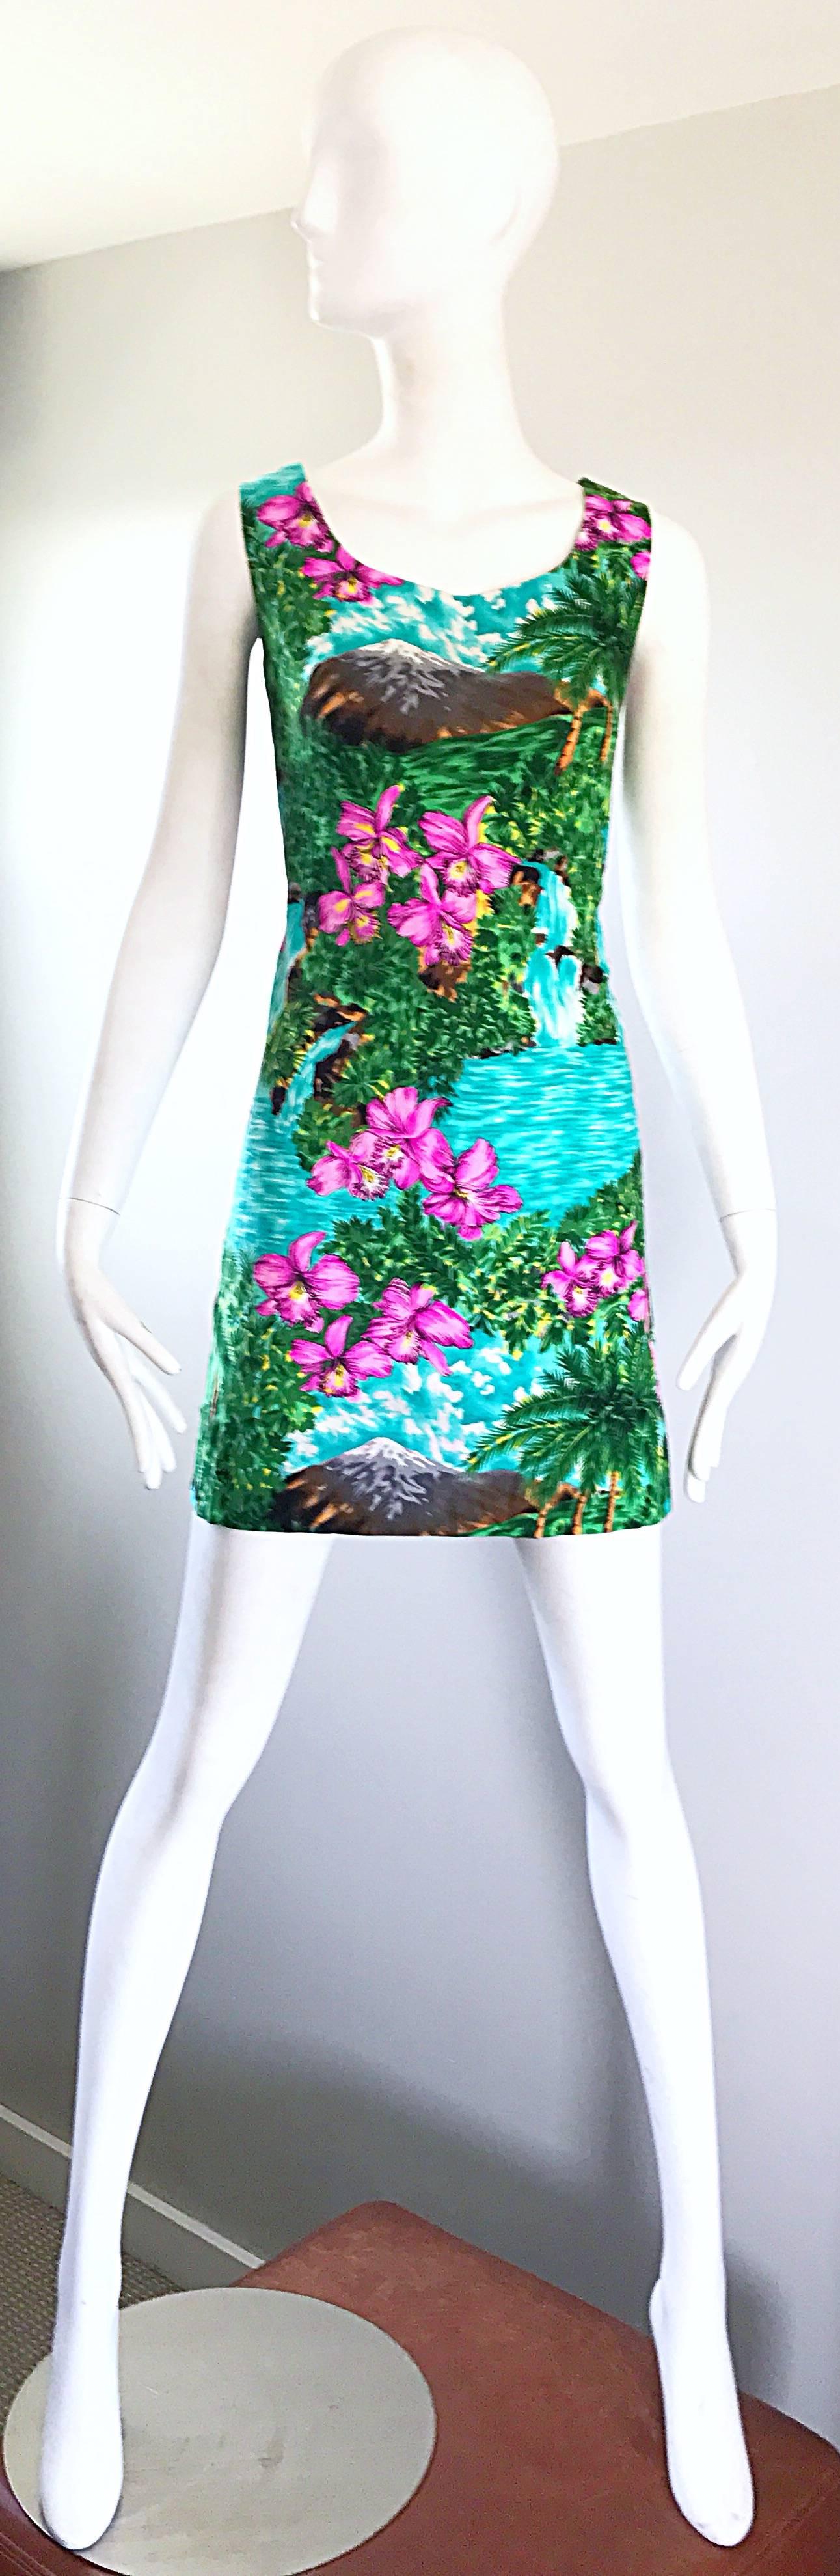 Hervorragende und seltene Vintage 60s Neuheit drucken tropischen hawaiianischen Mini-Baumwoll-Shift-Kleid! Mit einem tropischen 3D-Druck mit Palmen, Blumen, Wolken, Wasserfällen, Bergen und DANCING HULA GIRLS! Durchgehender Metallreißverschluss auf